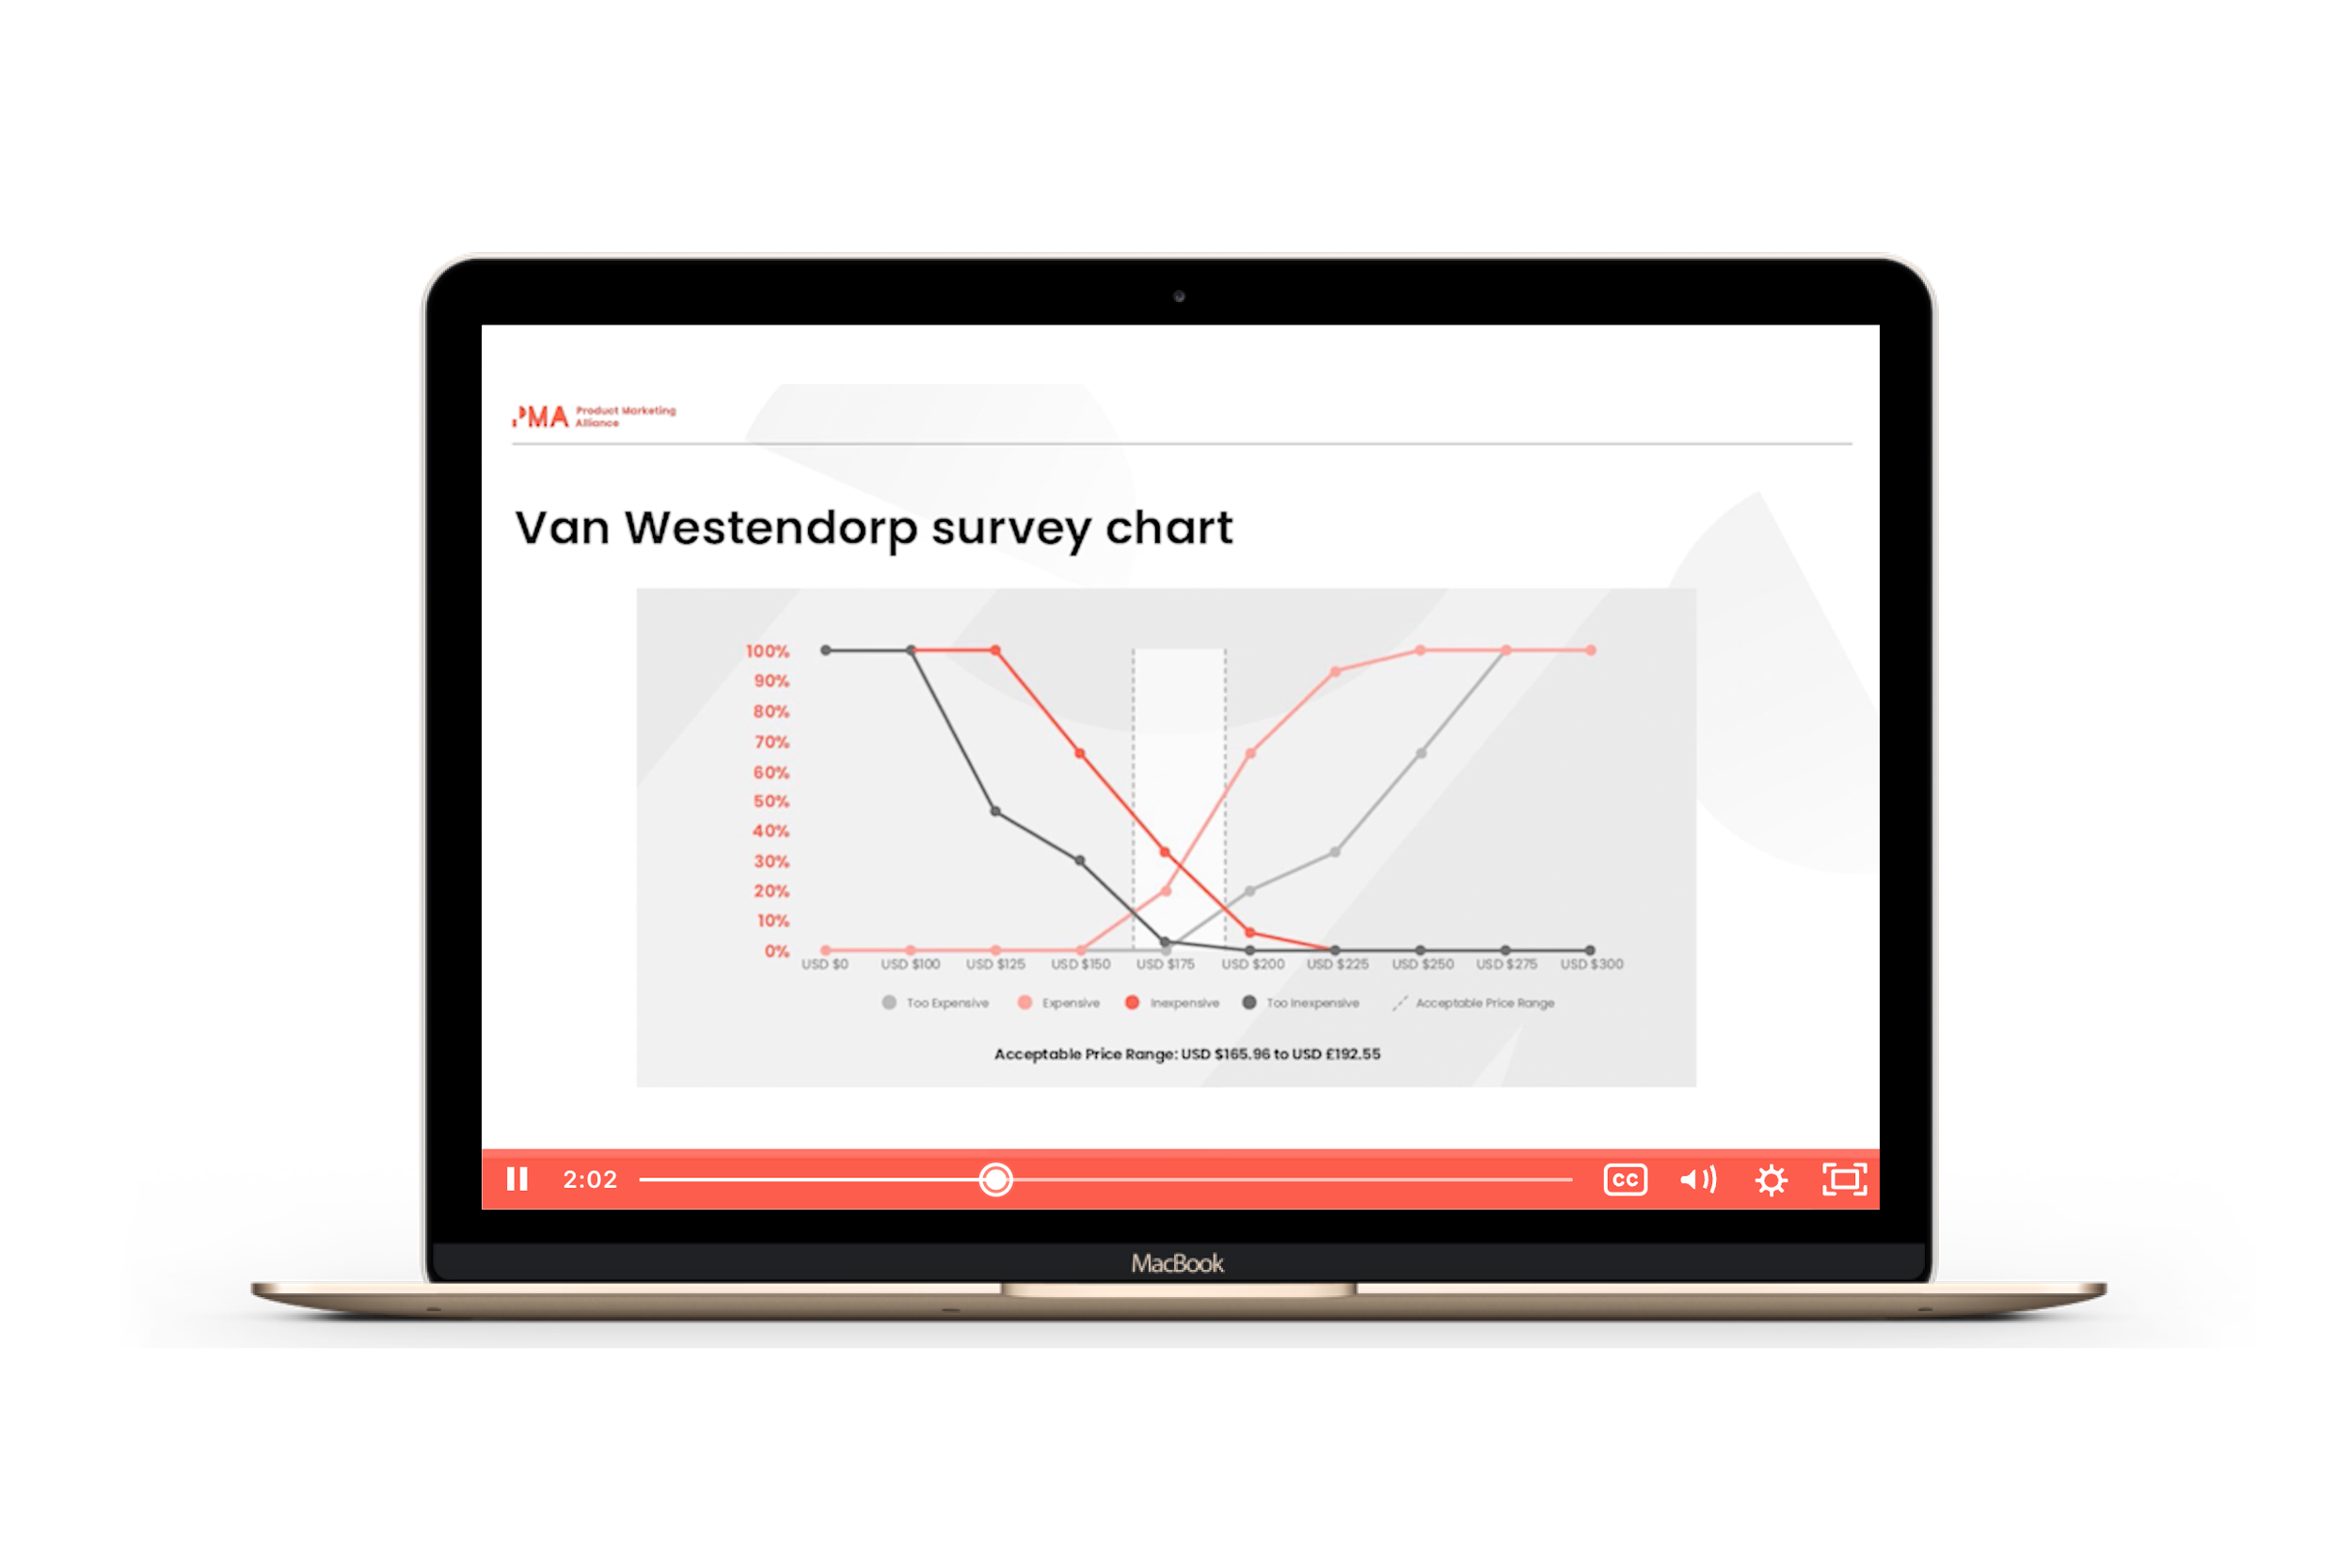 Van Westerndrop survey chart